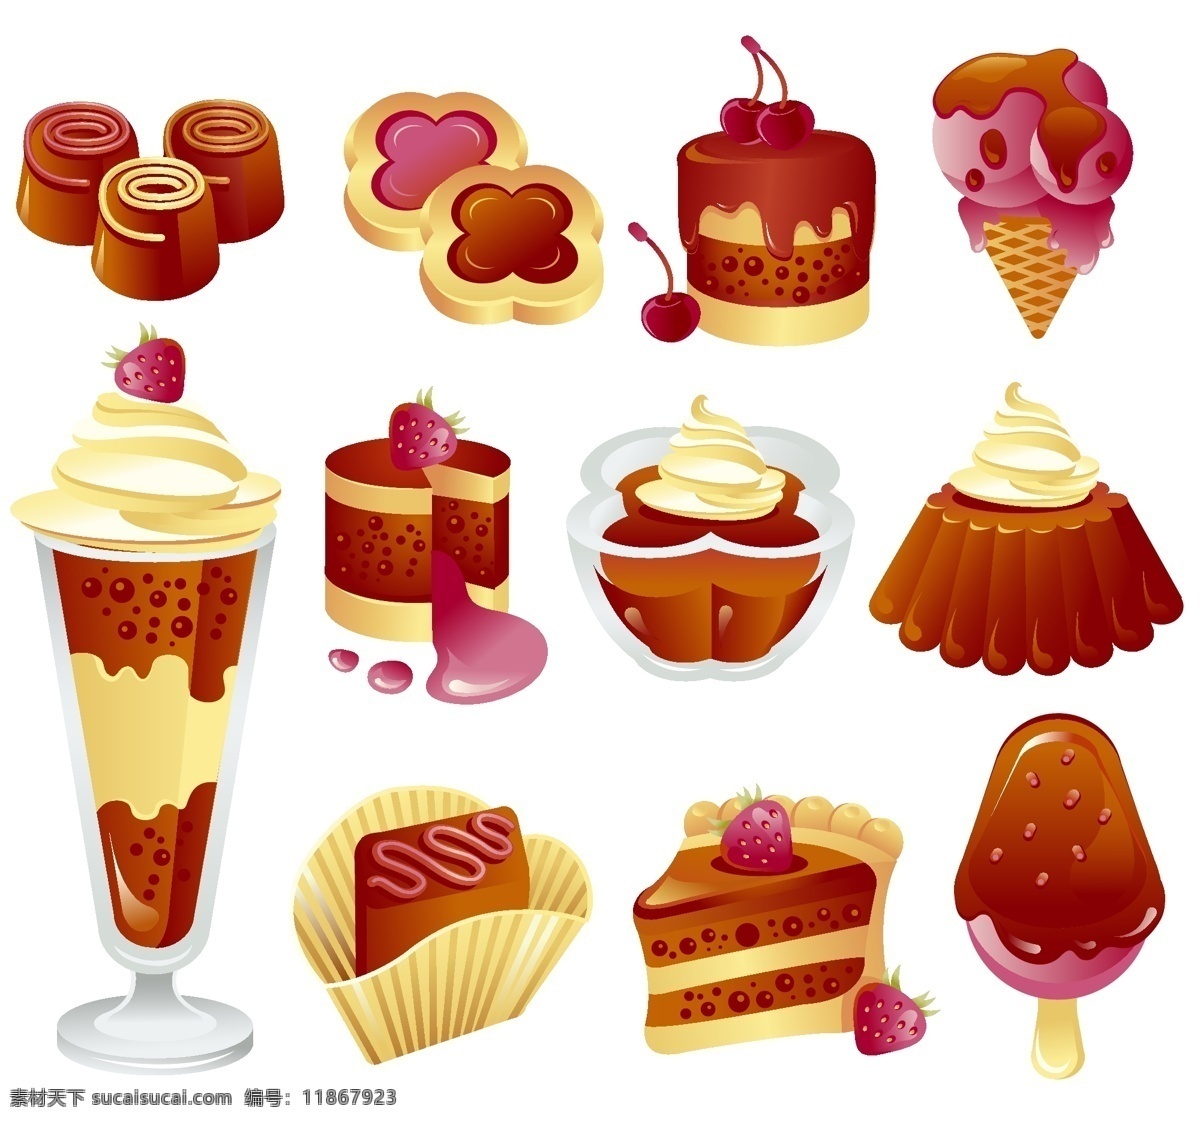 可口 诱人 甜点 主题 矢量 冰激凌 彩色 潮流 蛋糕 个性 平面 平面设计 巧克力 矢量素材 装饰 海报 现代 食物果蔬 其他海报设计